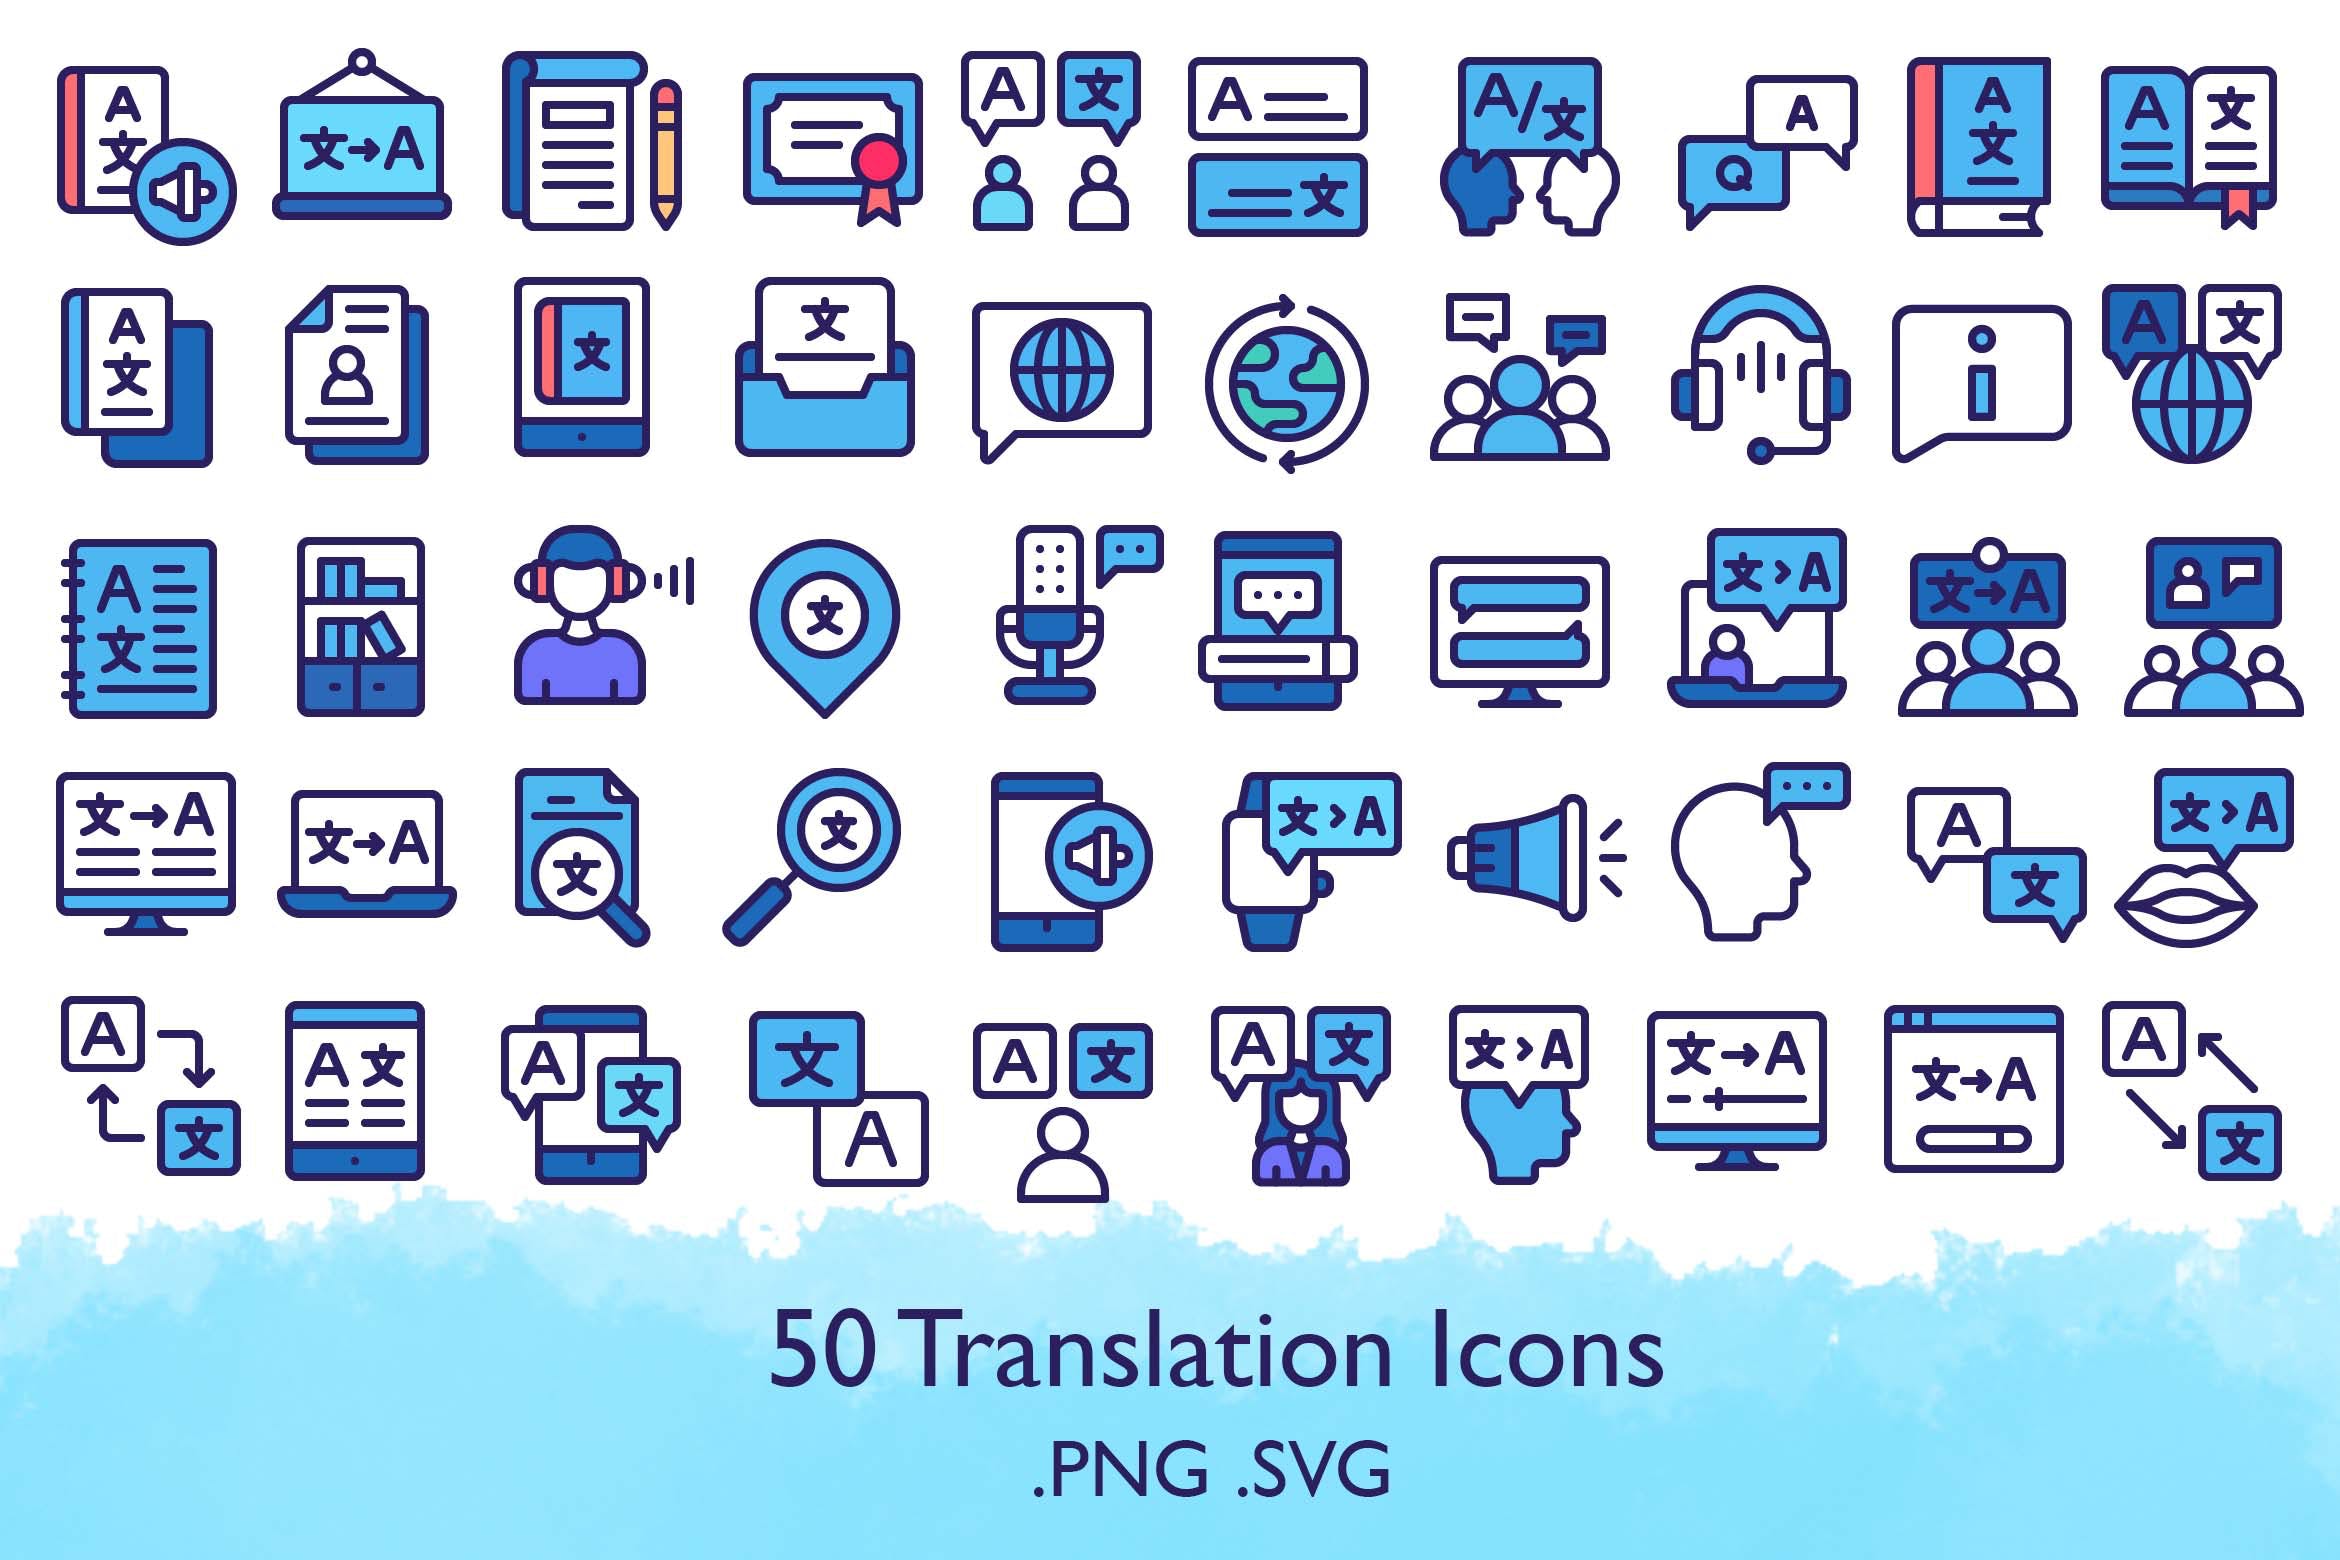 可编辑矢量SVG图标素材50个高质量的翻译图标免费下载